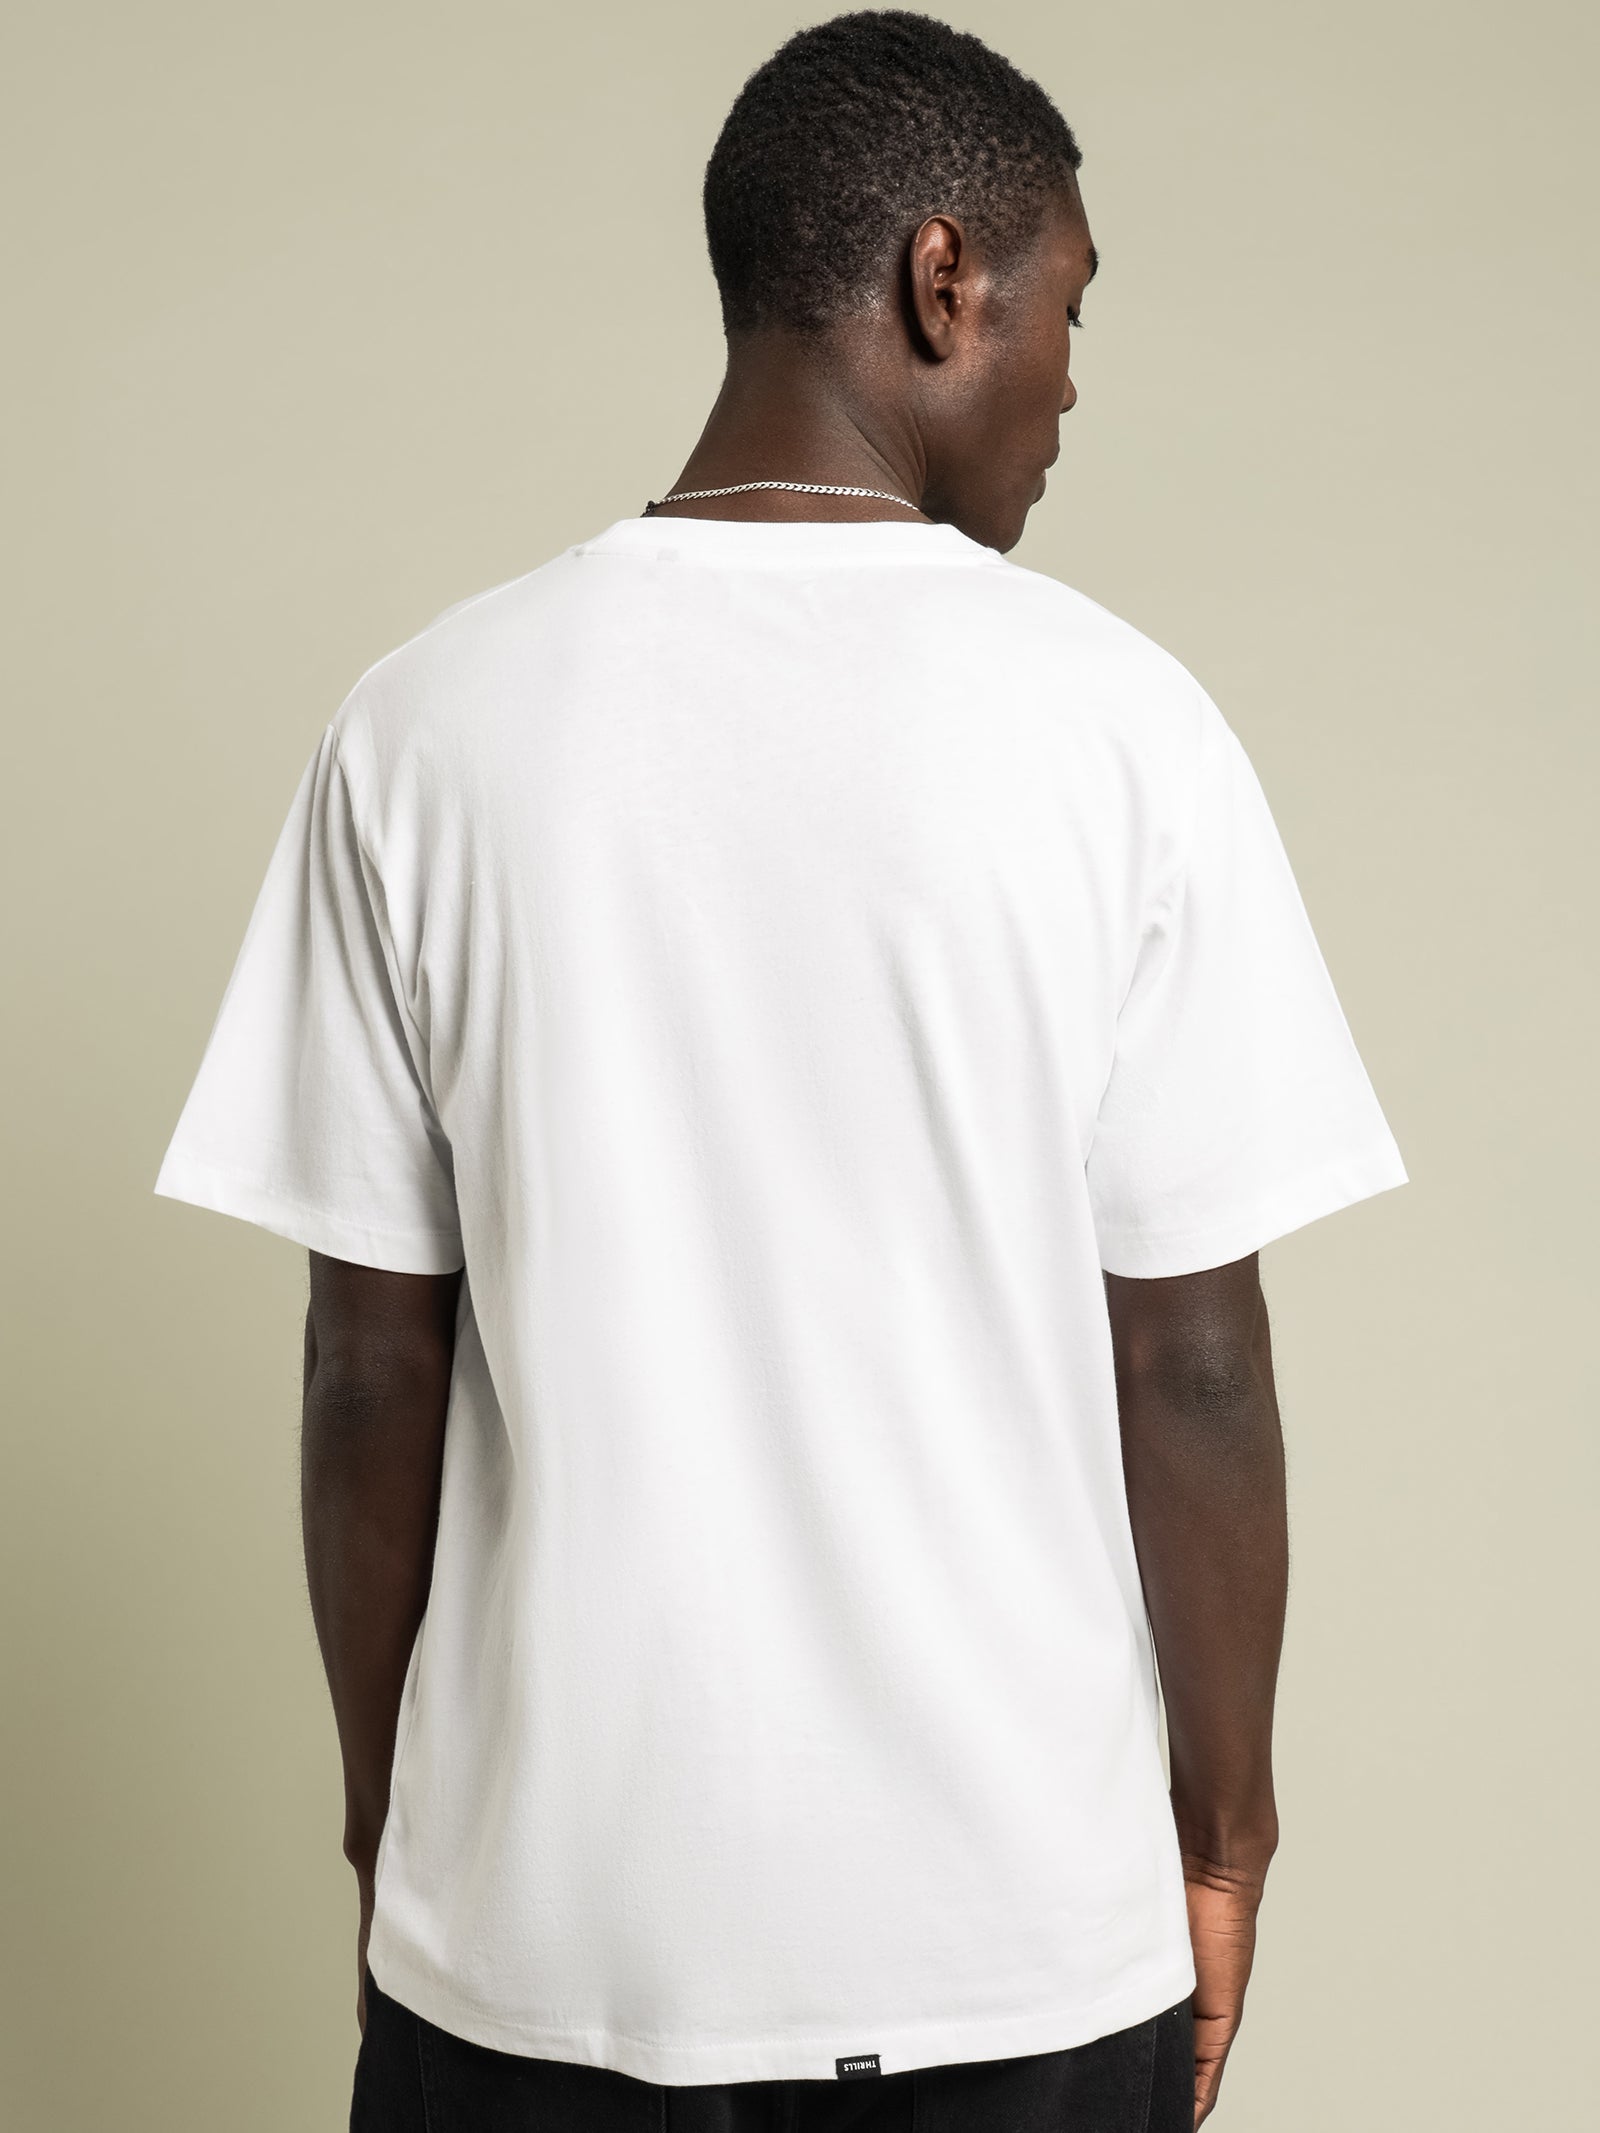 Minimal Thrills Merch Fit T-Shirt in White - Glue Store